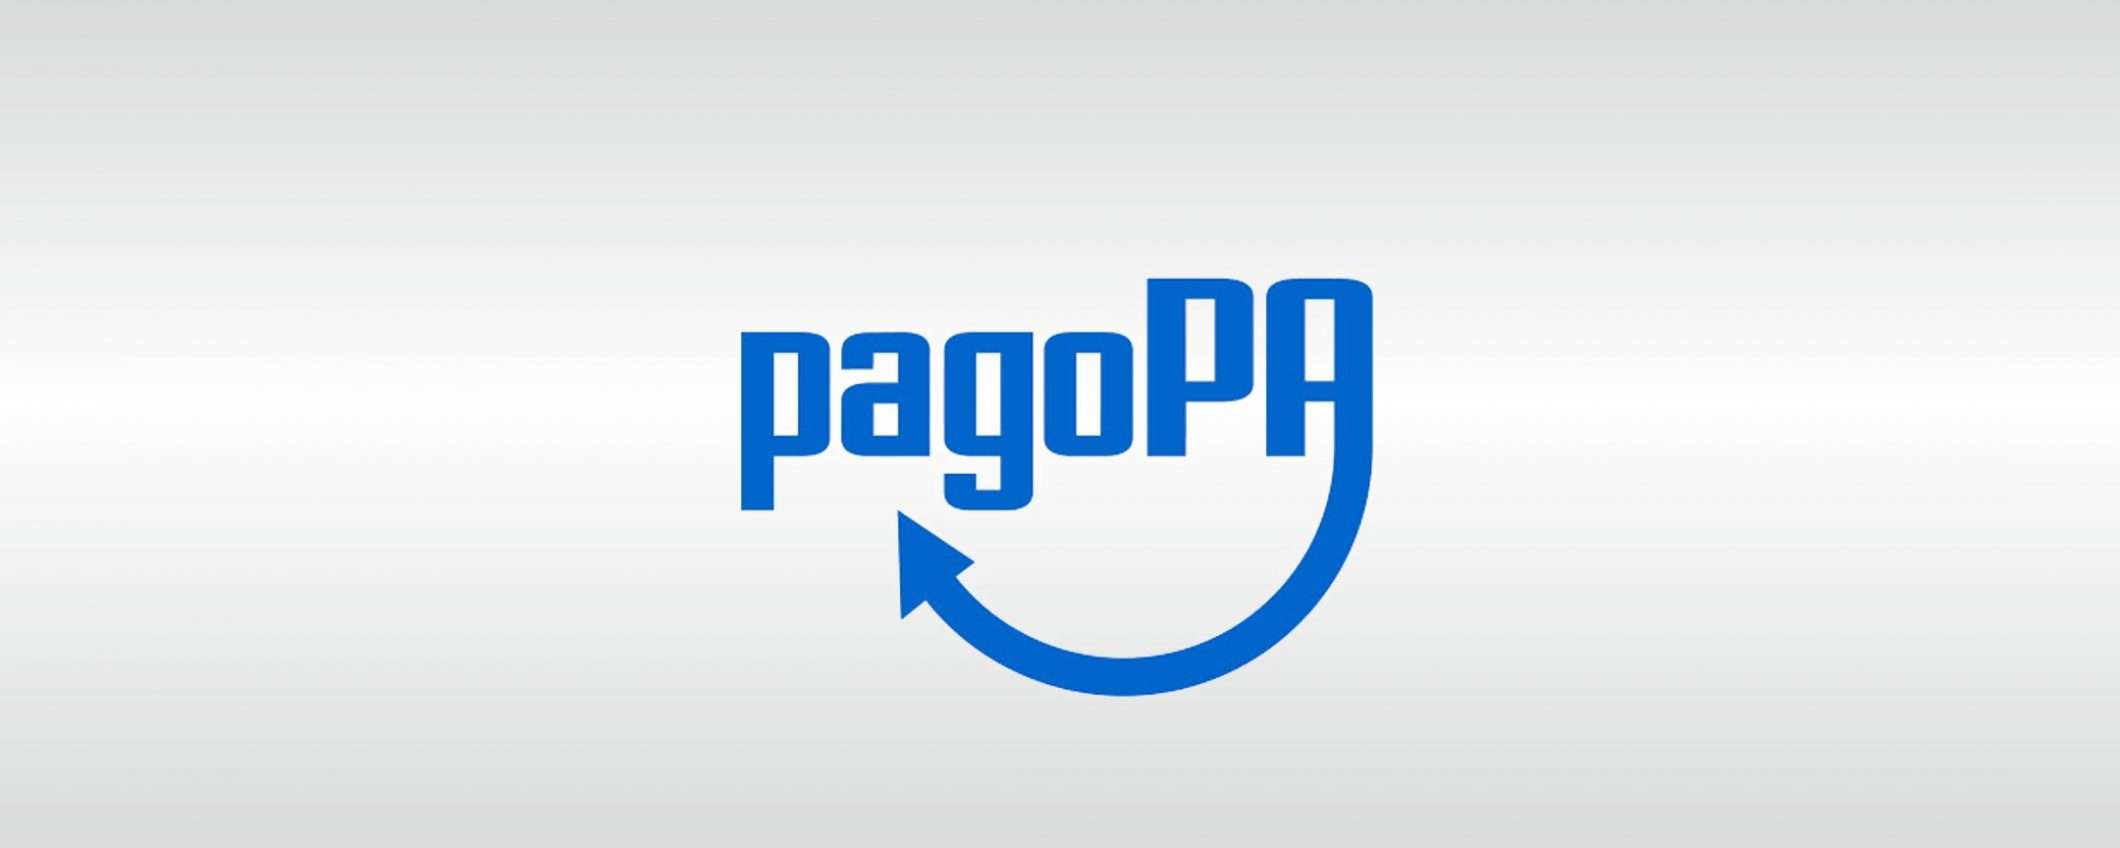 Cashback: PagoPA garantisce per la privacy su app IO